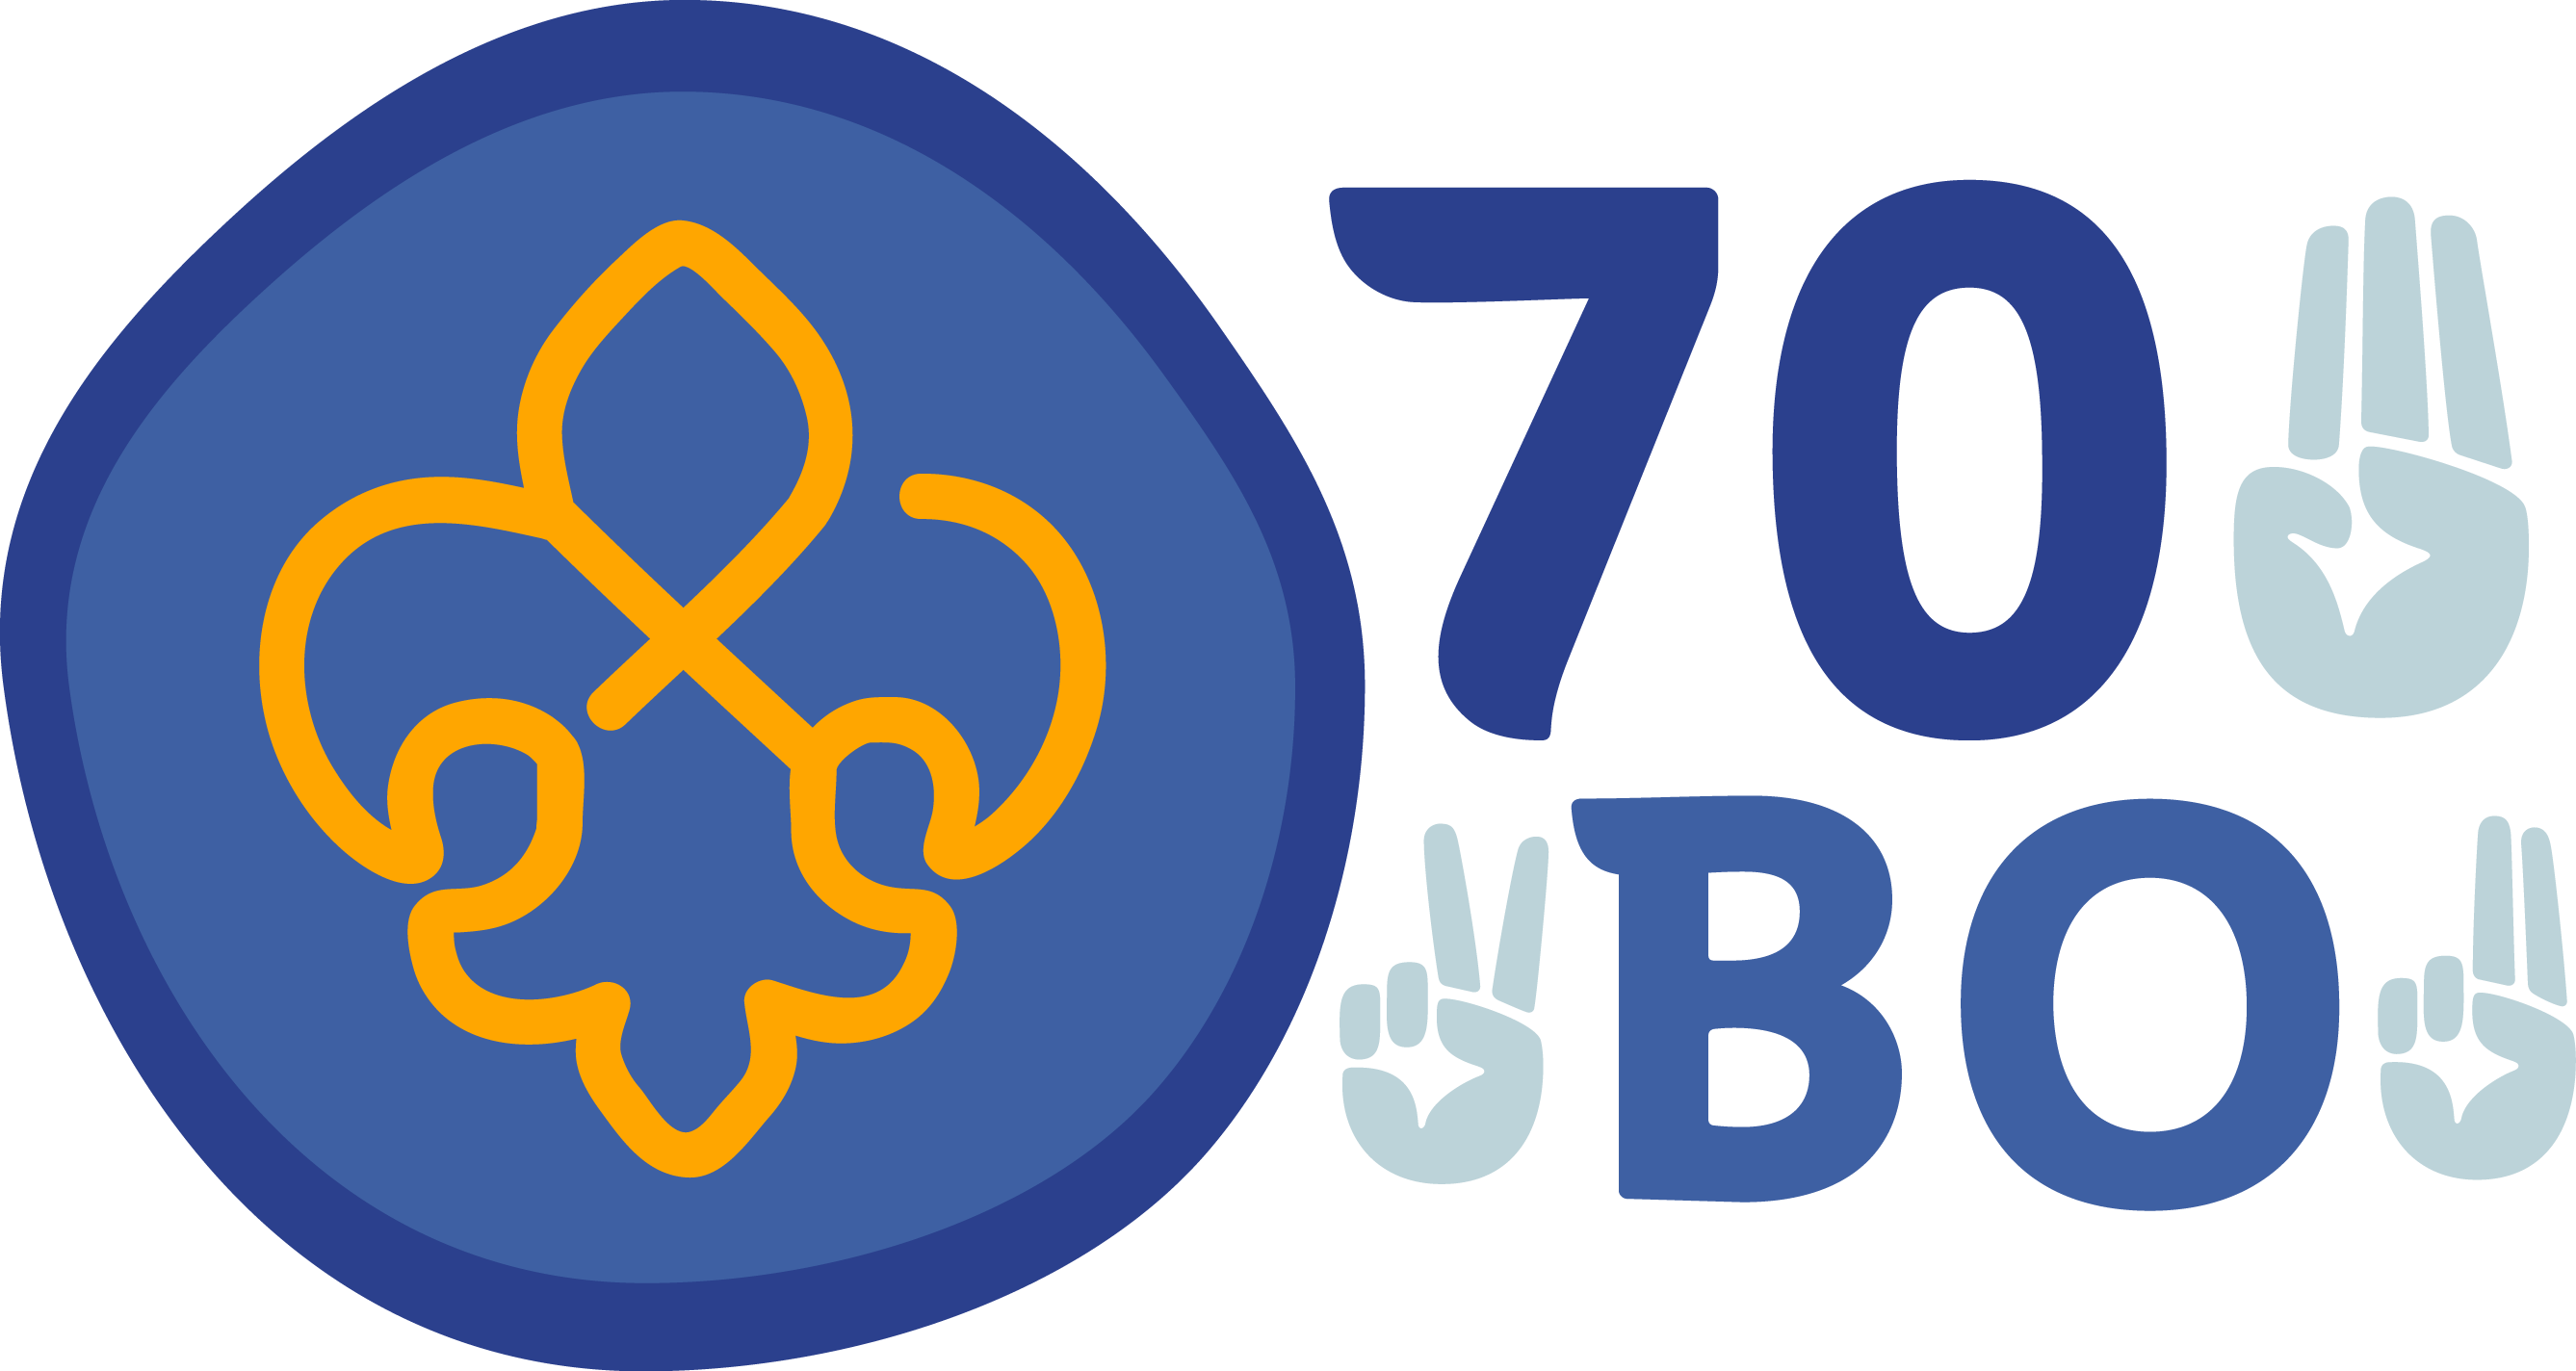 70Bo – Stránky 70. oddílu Junáka Brno